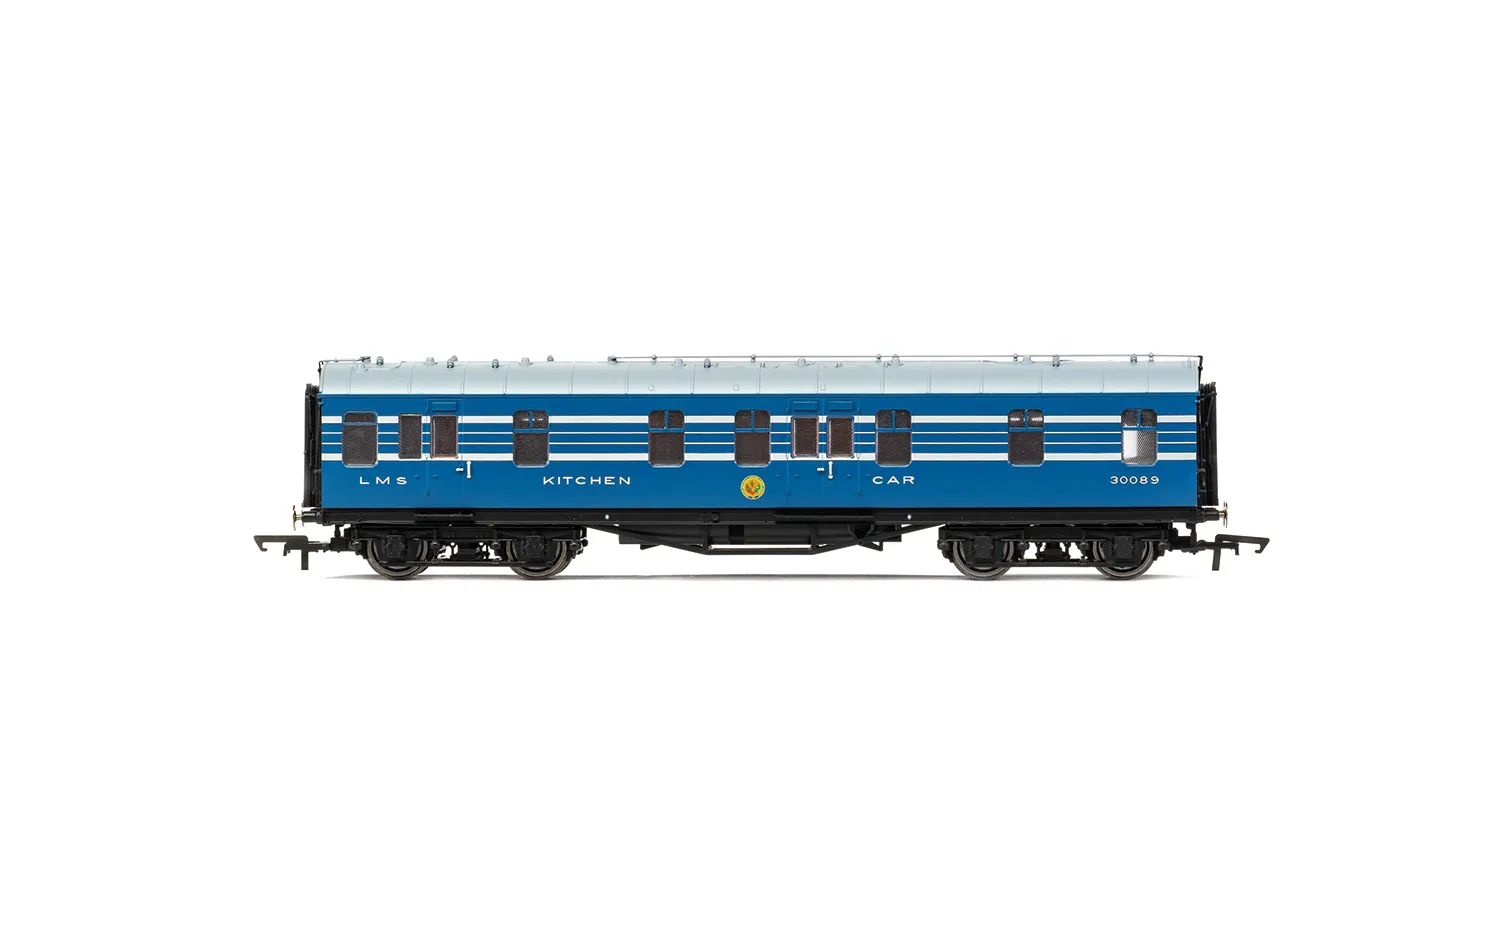 LMS Coronation Scot Train & Coaches Bundle